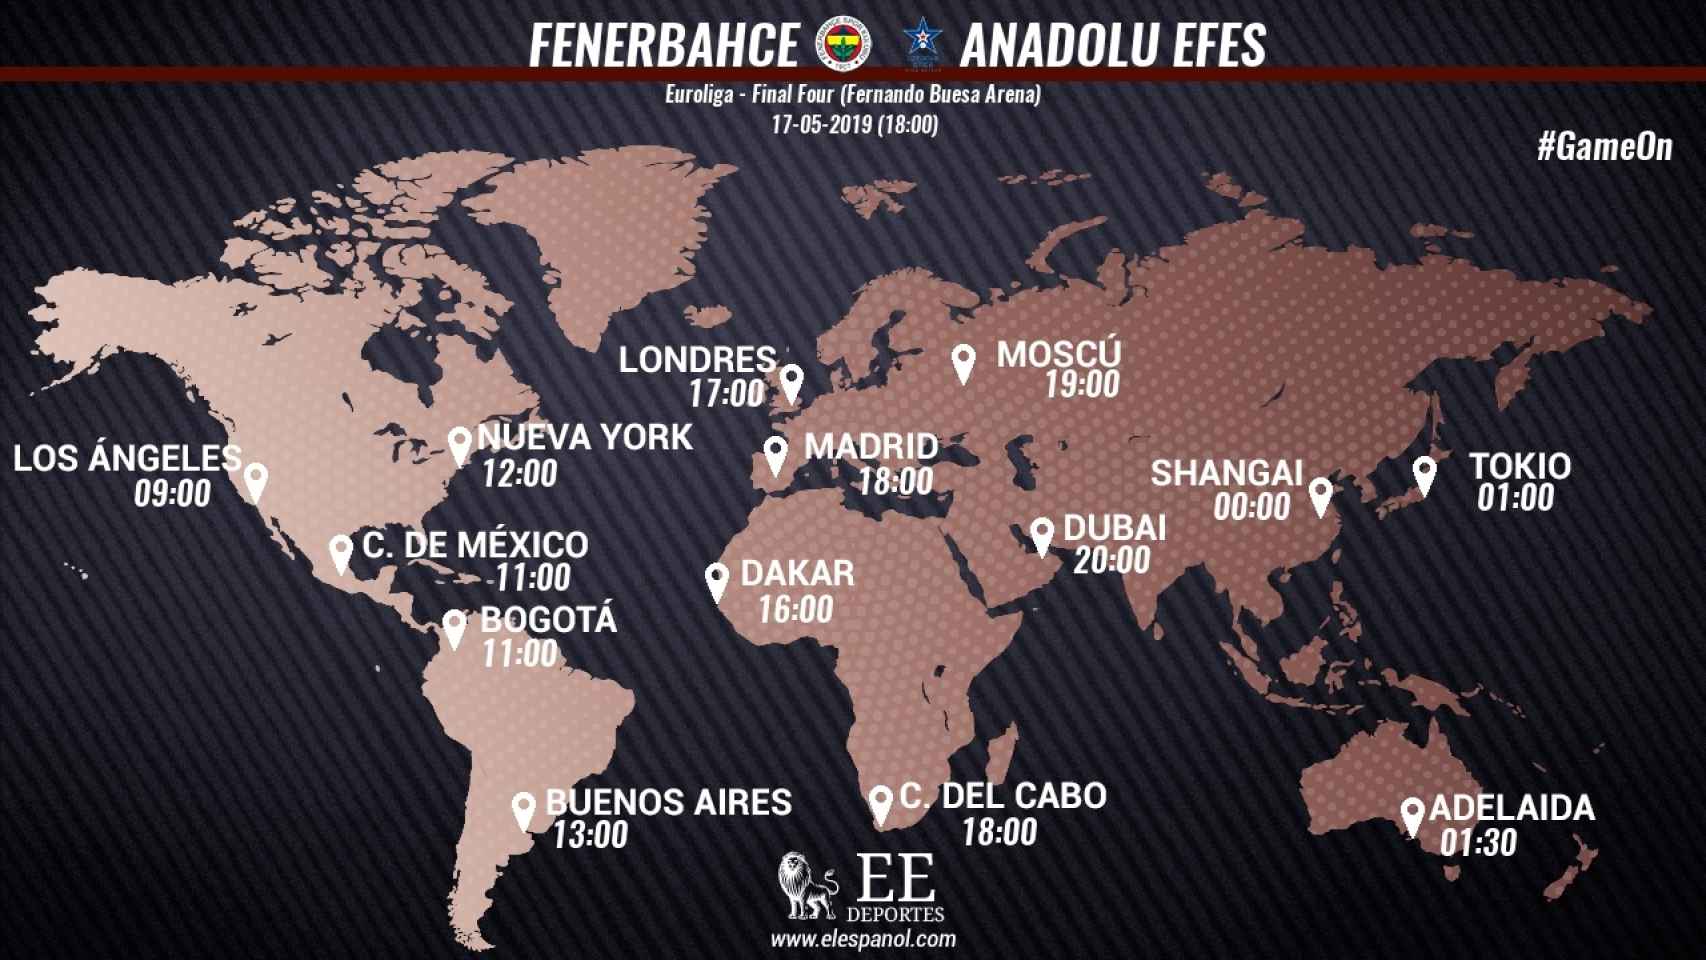 Horario internacional del Fenerbahce - Anadolu Efes